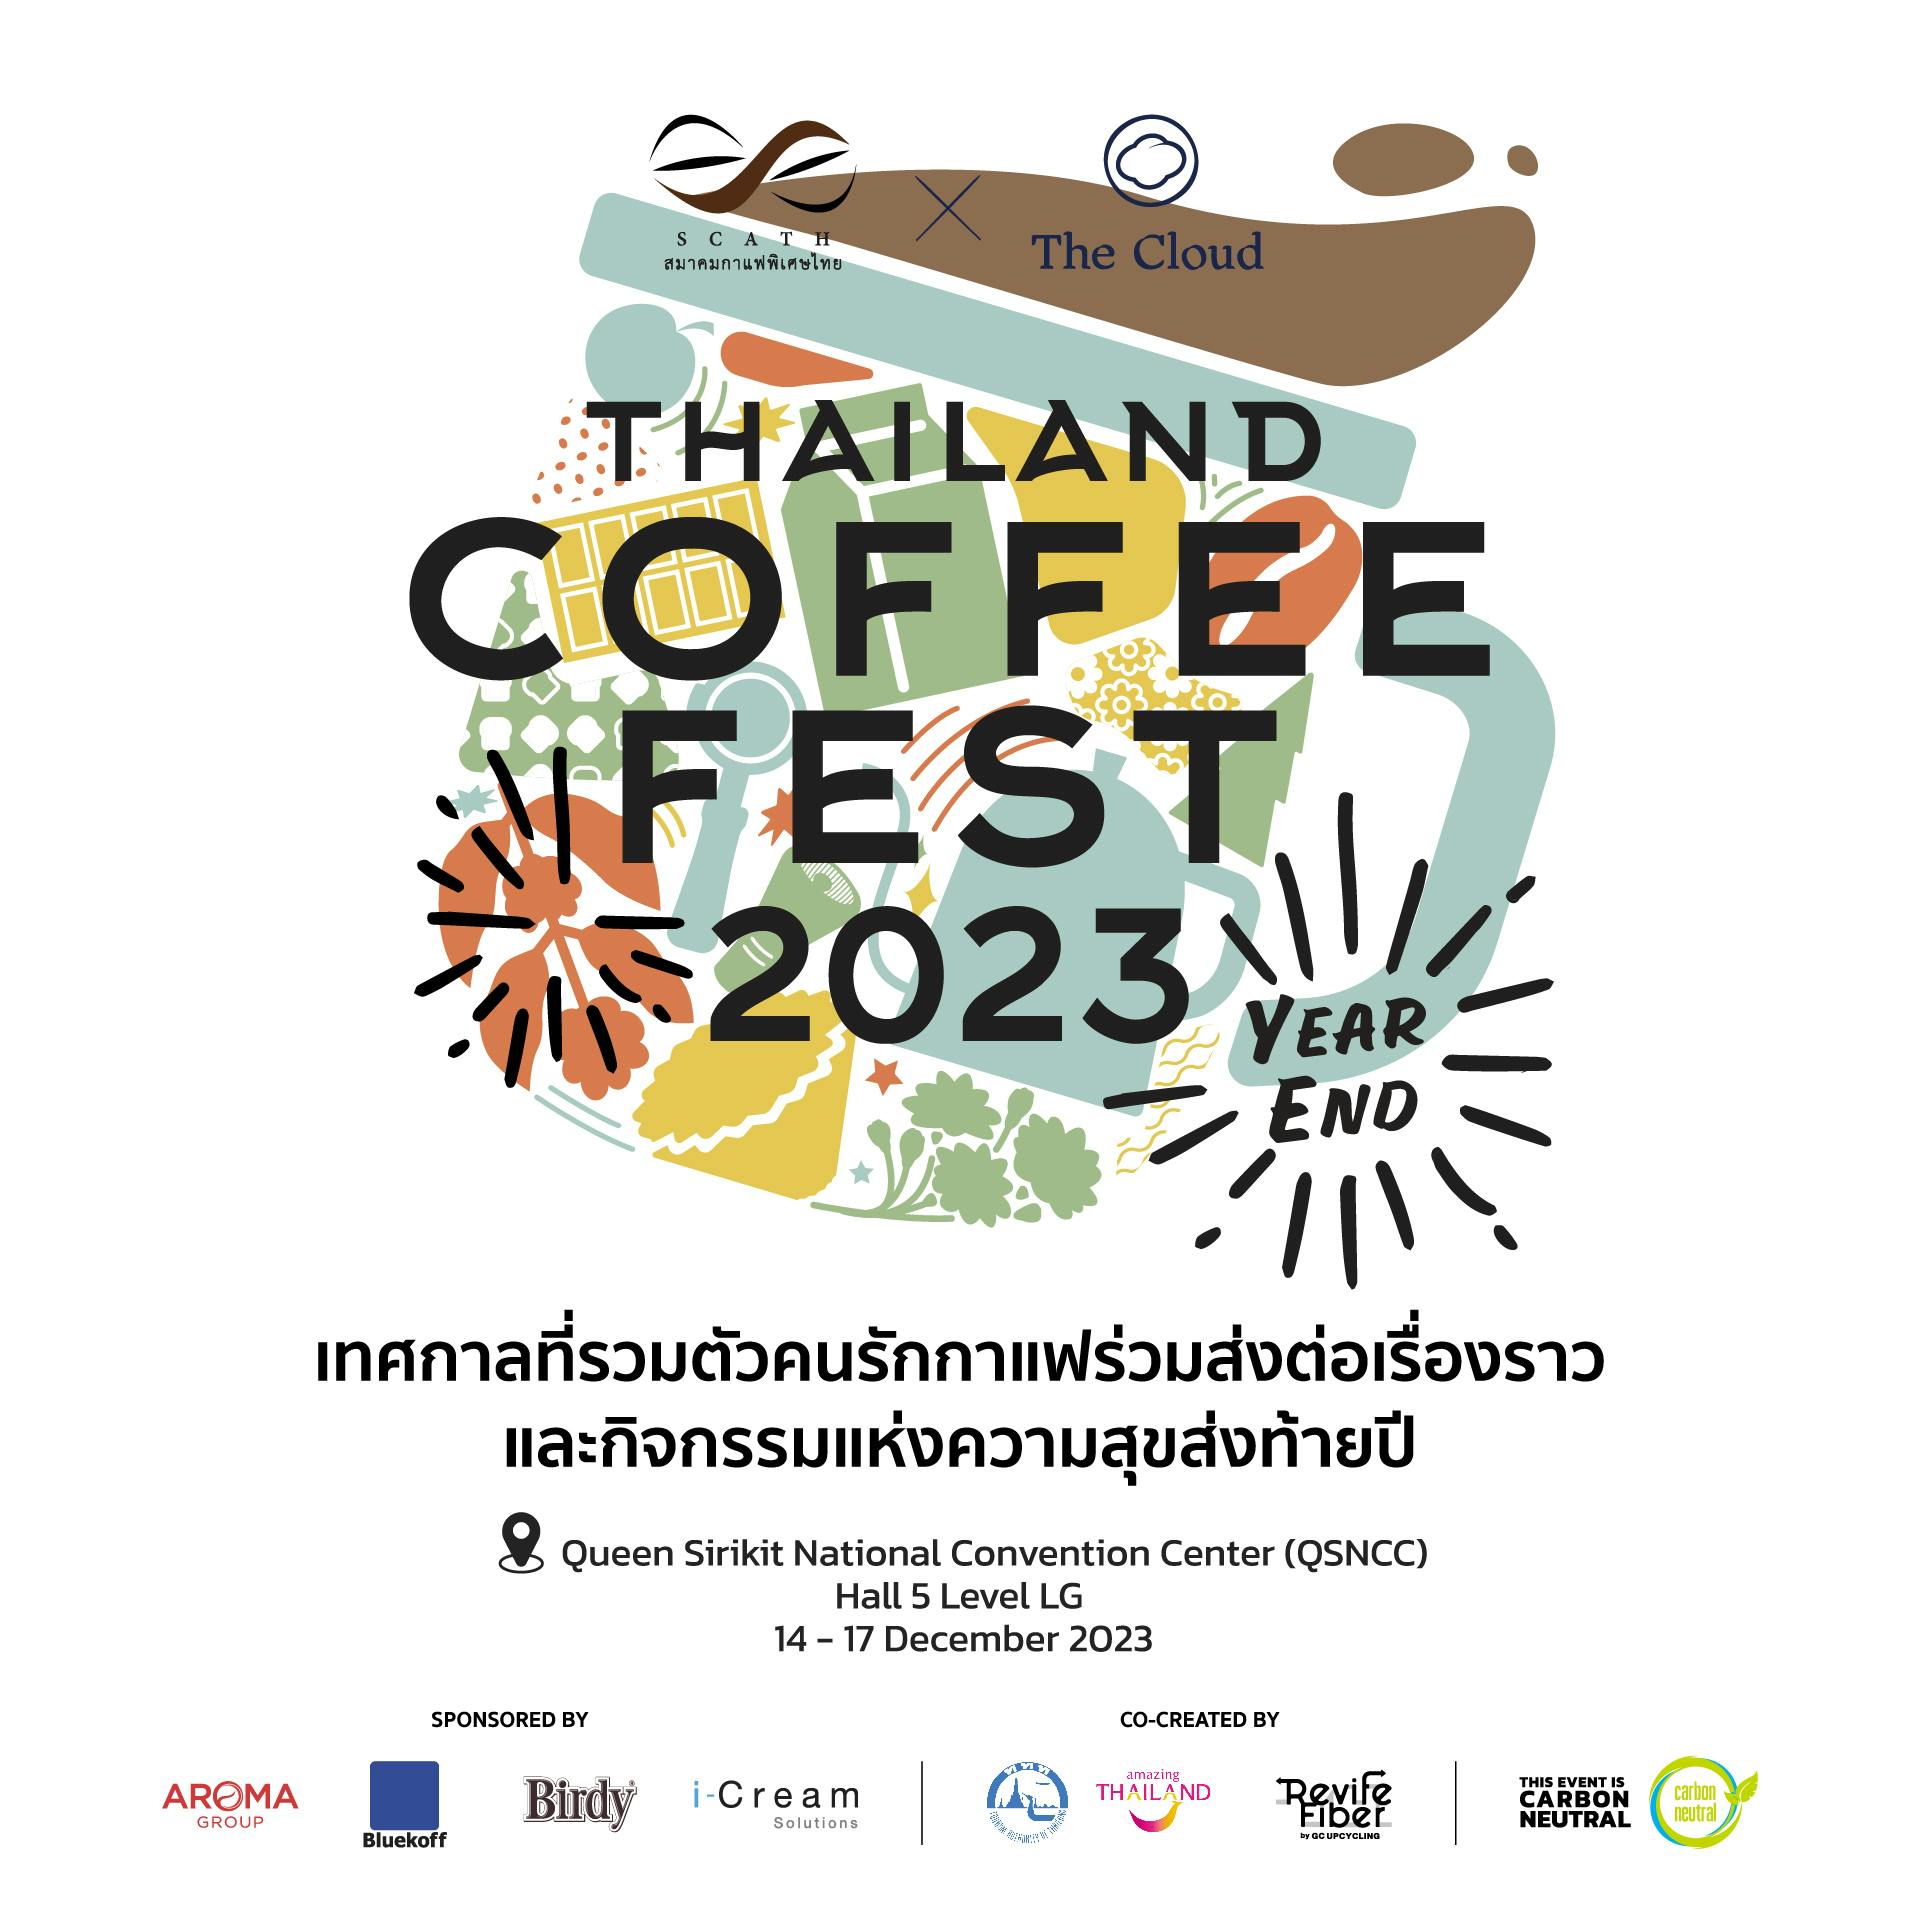 Thailand Coffee Fest ‘Year End’ 2023